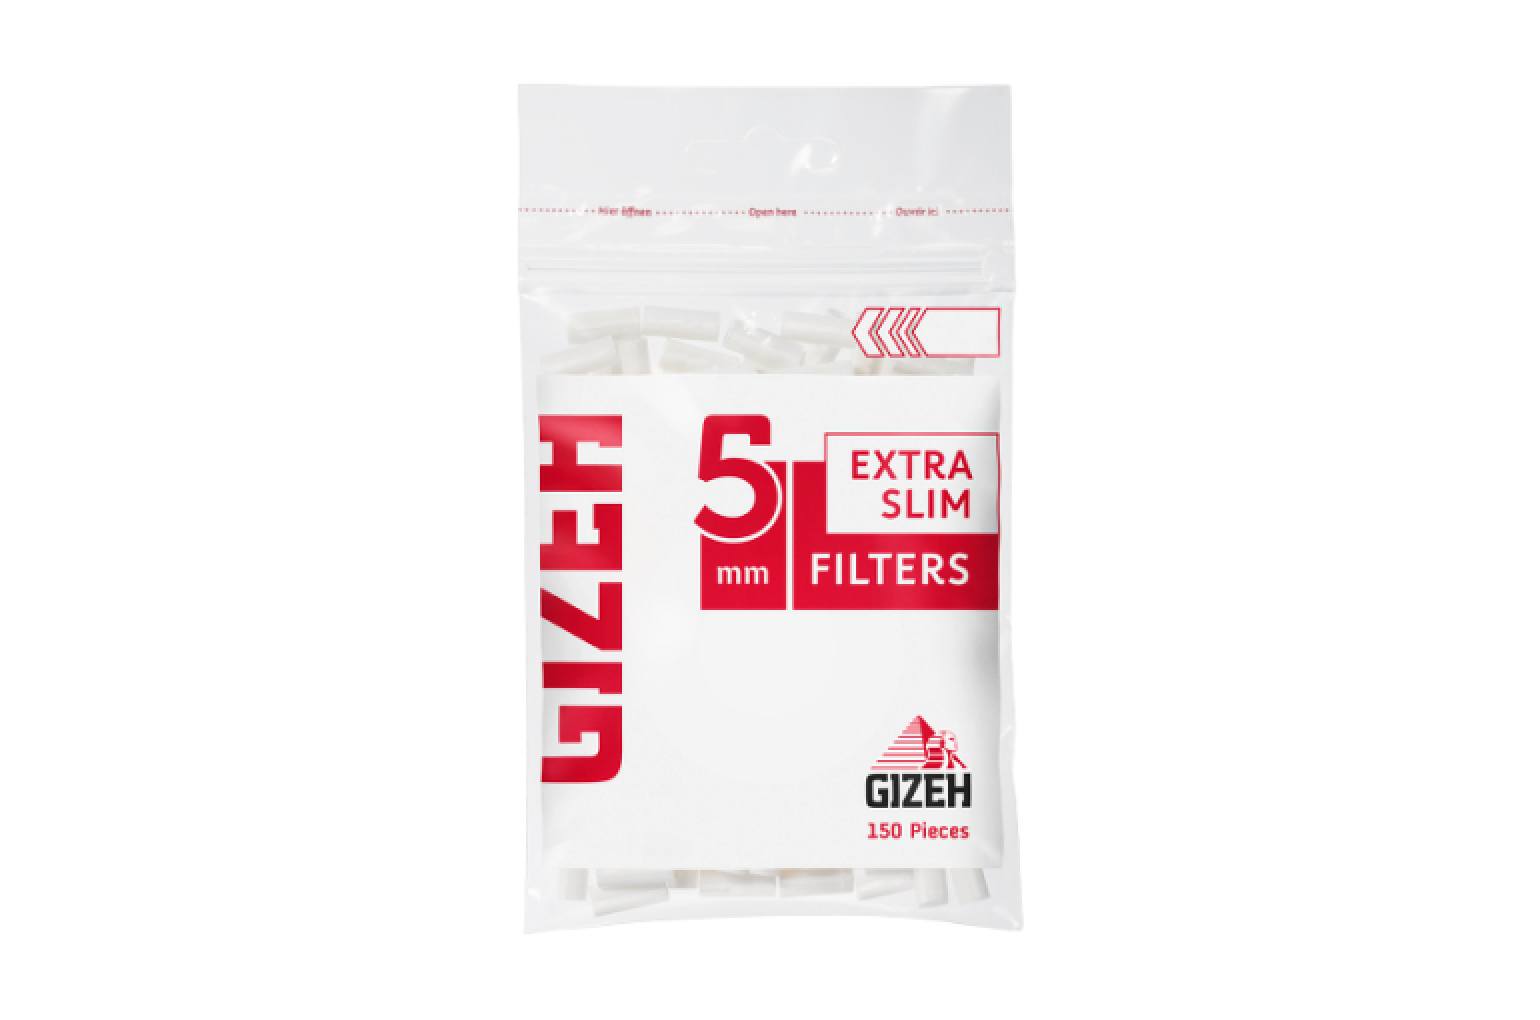 Gizeh Slim Filter kaufen, 40.50 CHF